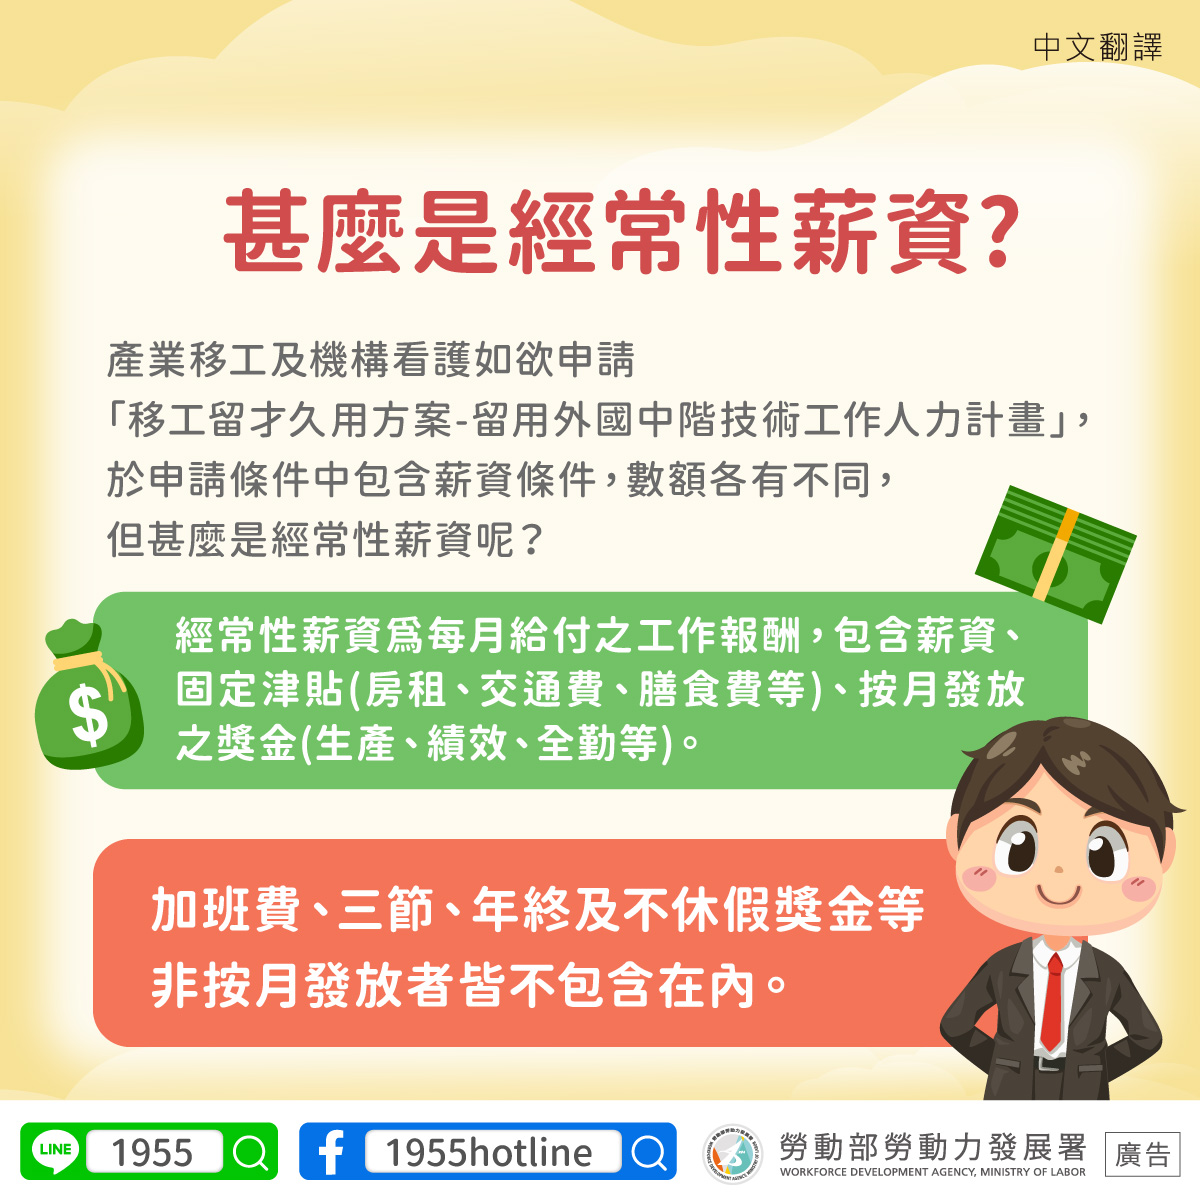 經常性薪資-中文翻譯